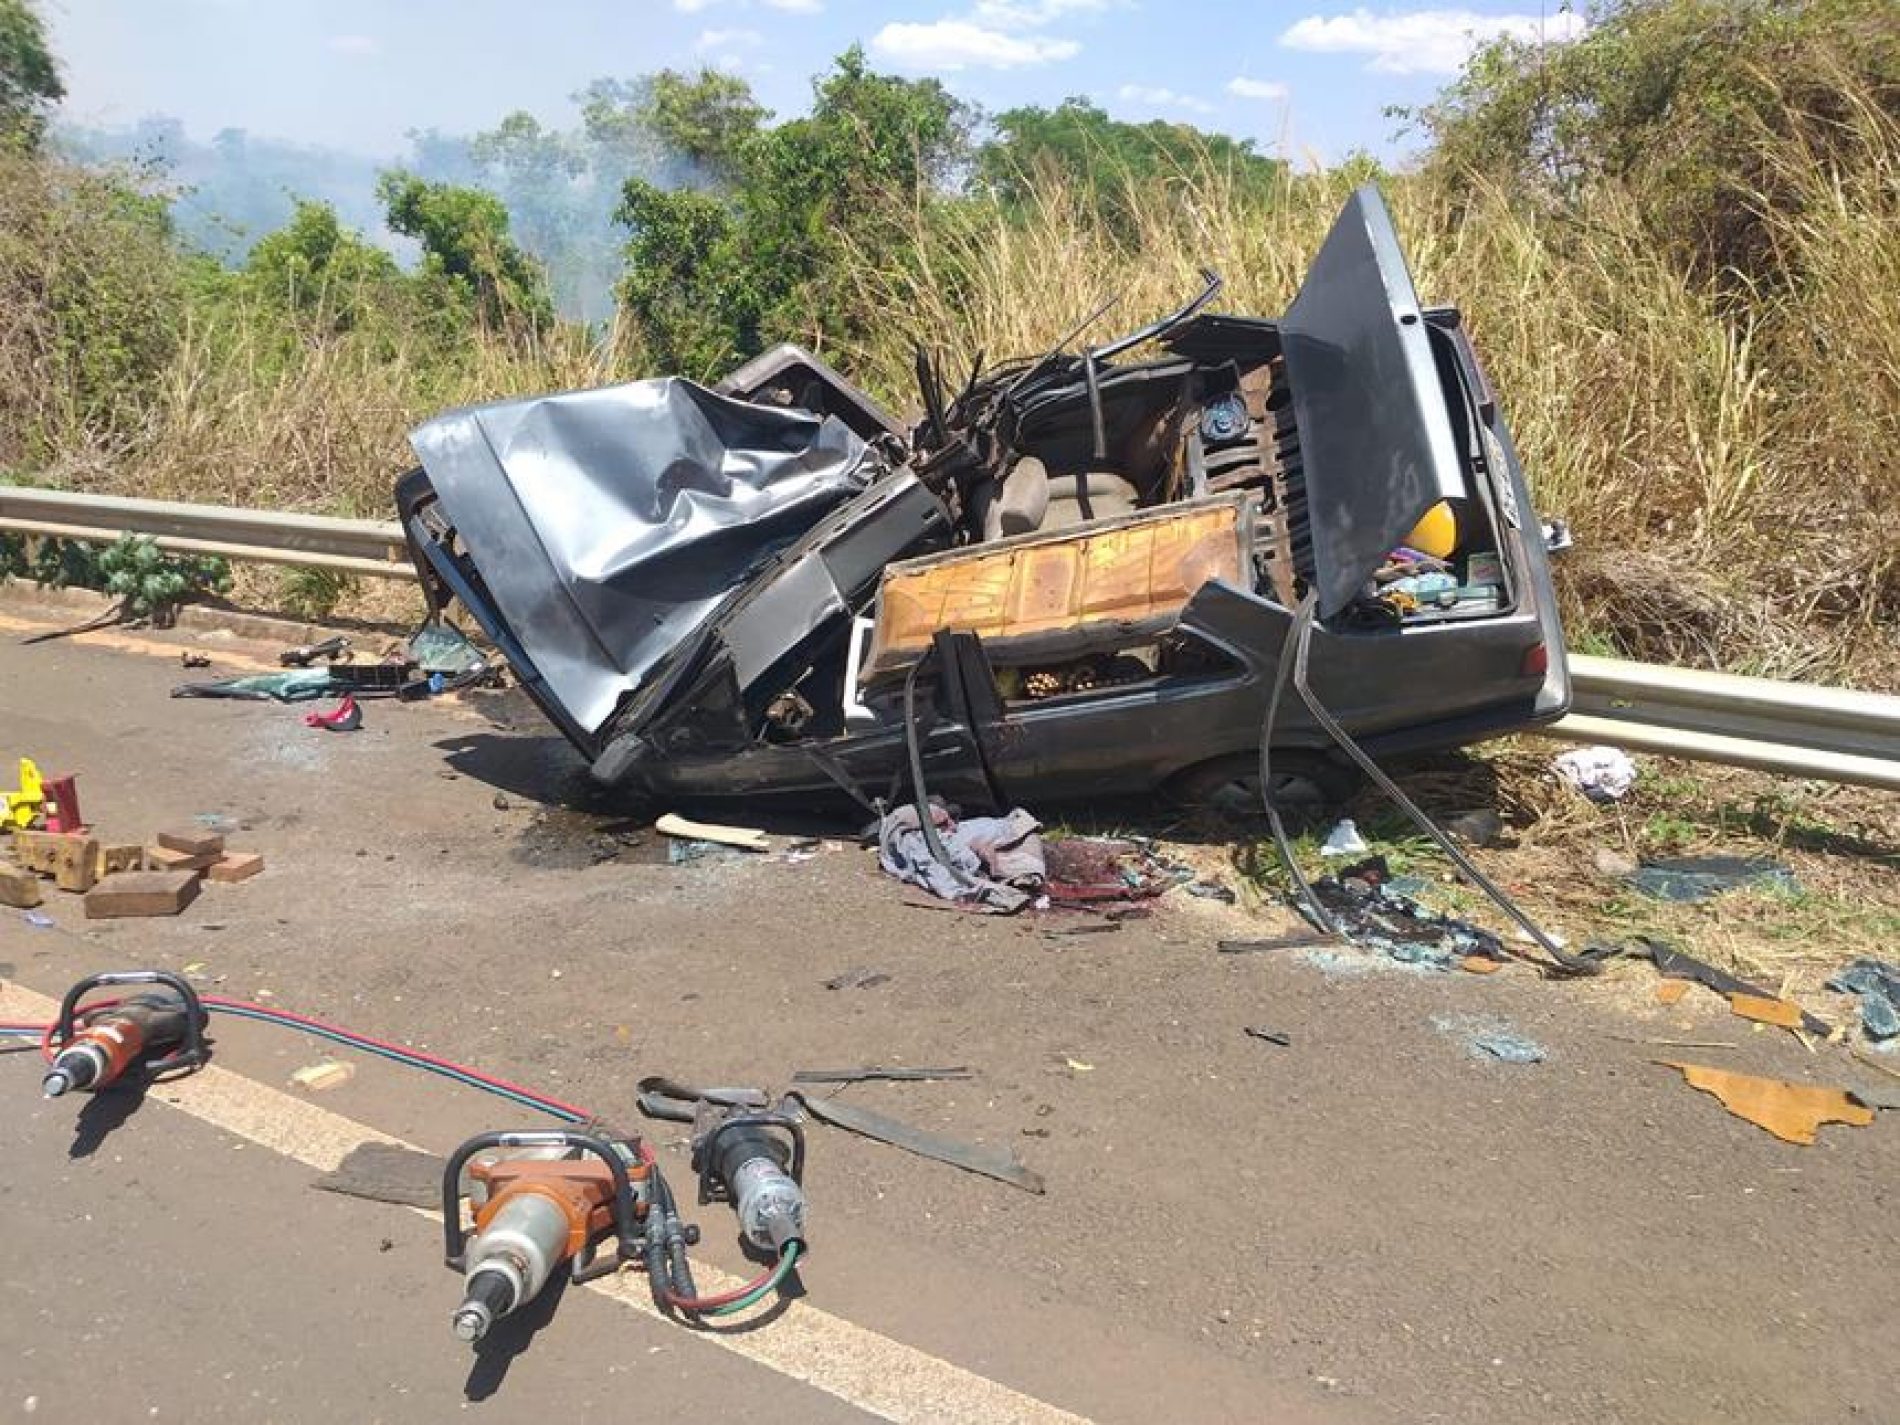 ALTAIR/MATÉRIA COMPLETA: Família se envolve em acidente na Rodovia Armando Sales de Oliveira e mulher vai a óbito no local